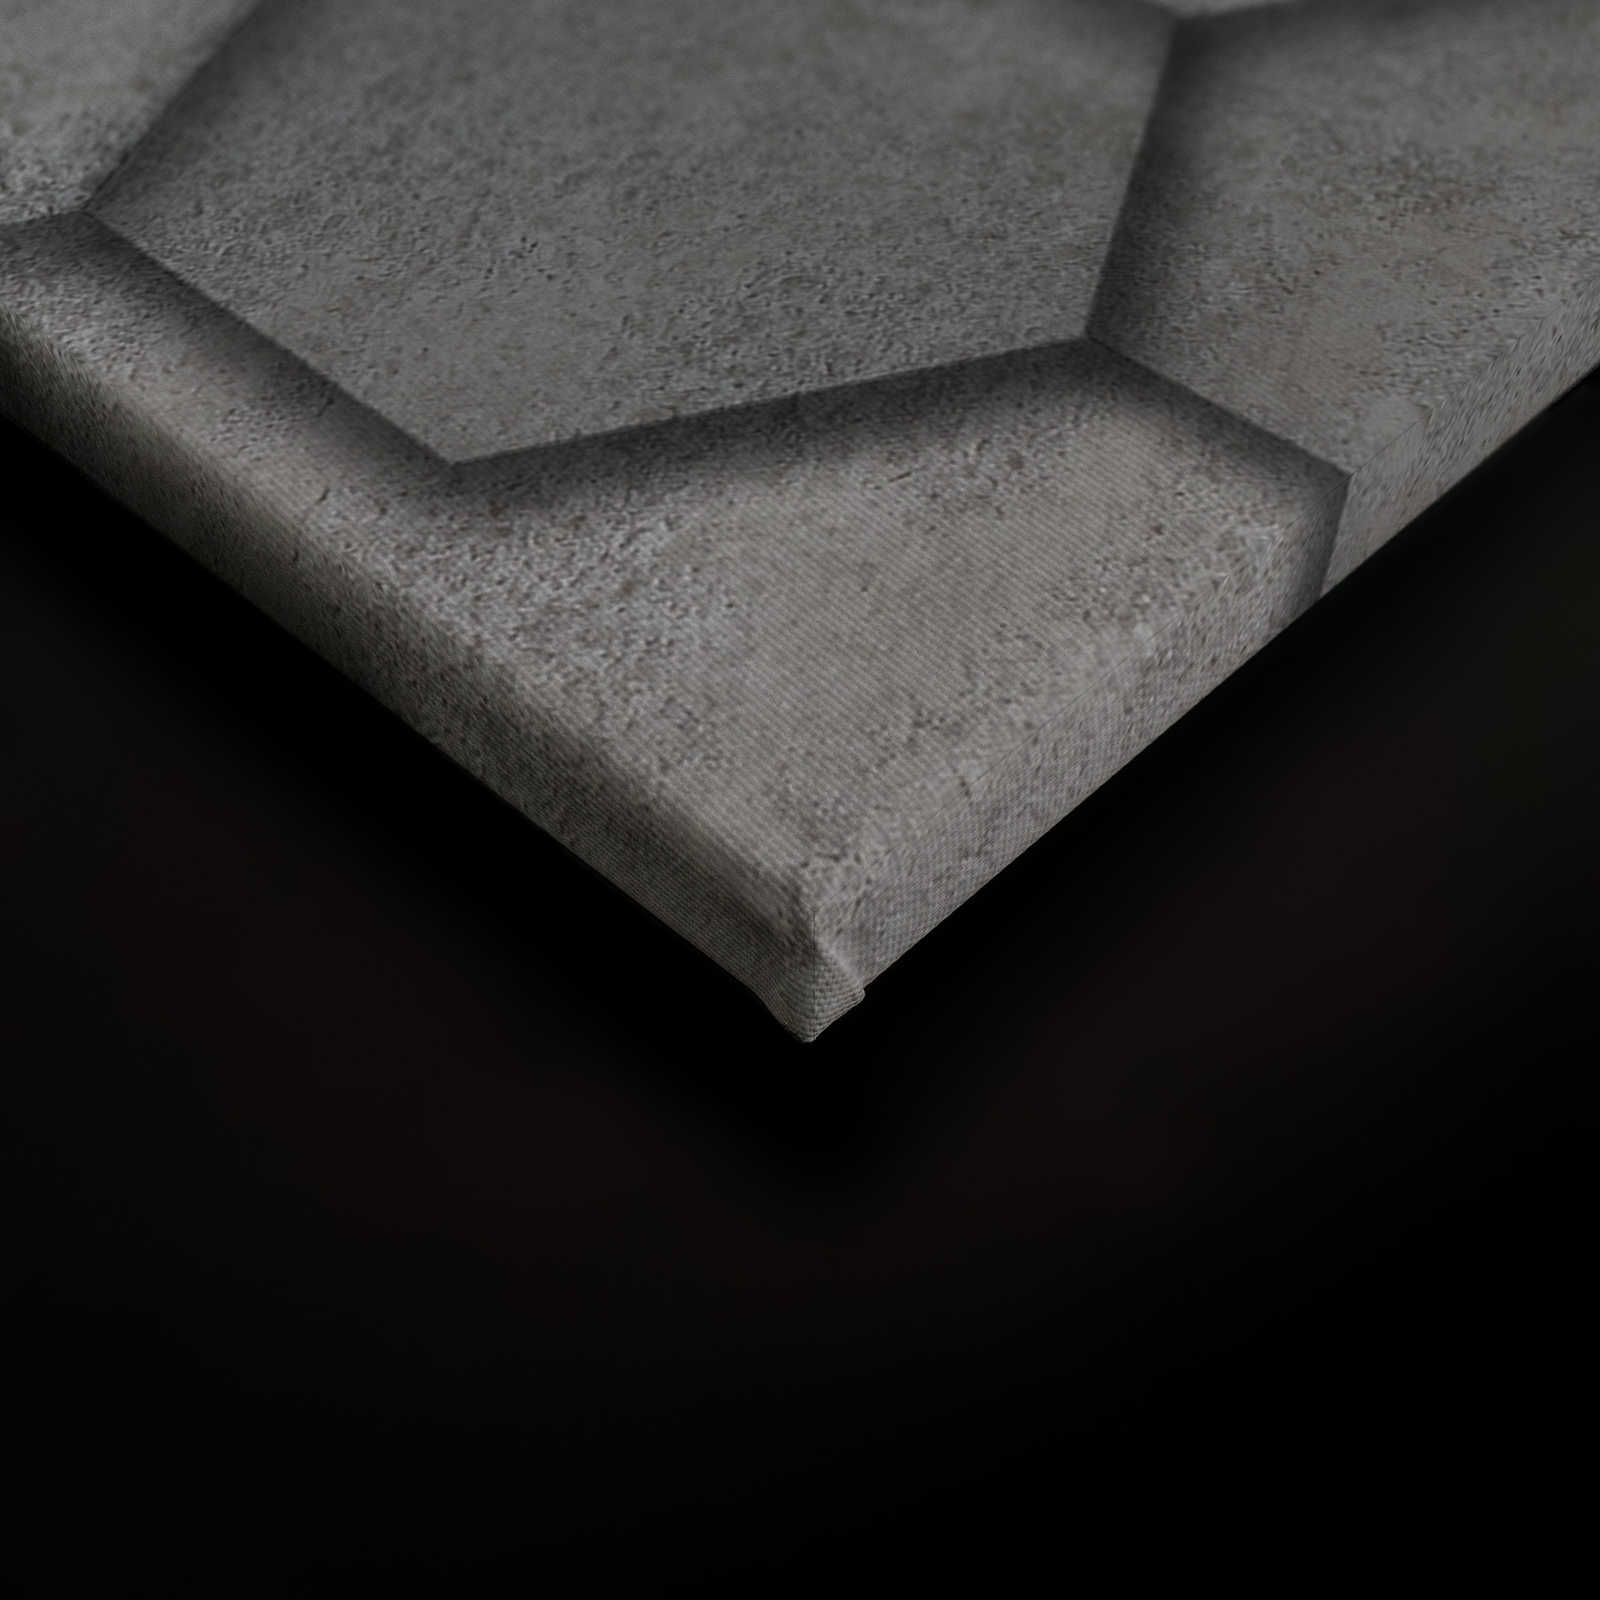             Toile avec carreaux géométriques hexagonaux aspect 3D | gris, argenté - 0,90 m x 0,60 m
        